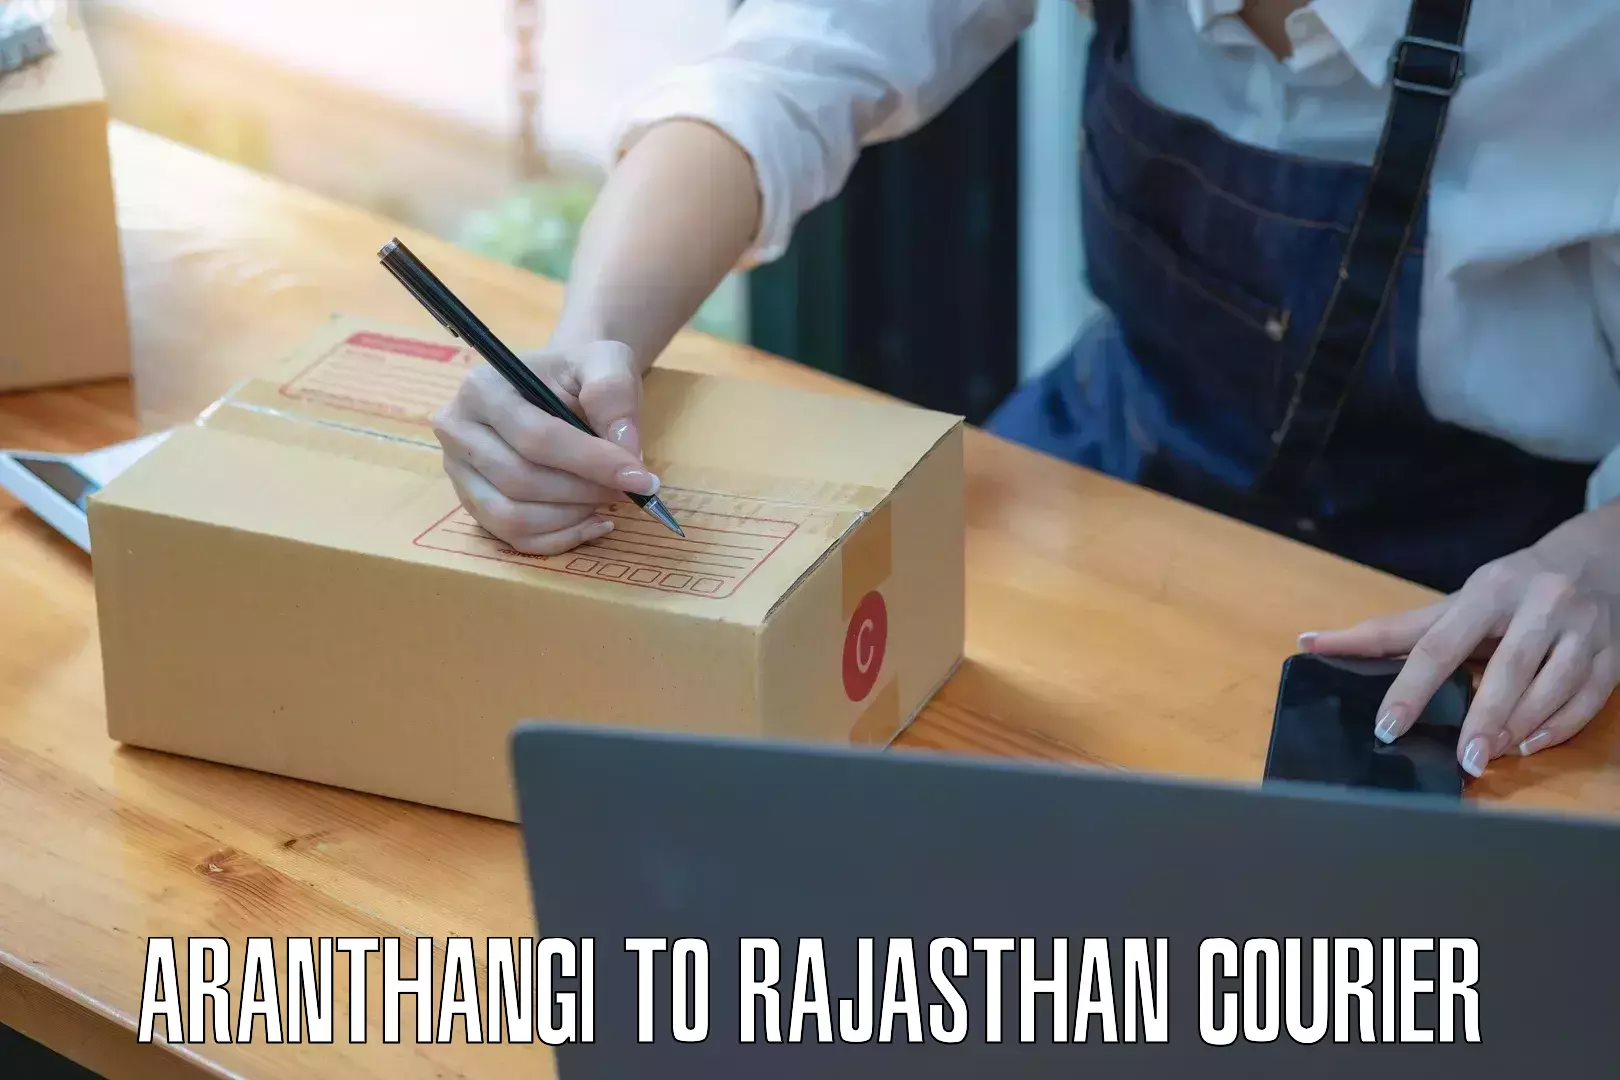 Bulk courier orders Aranthangi to Nokha